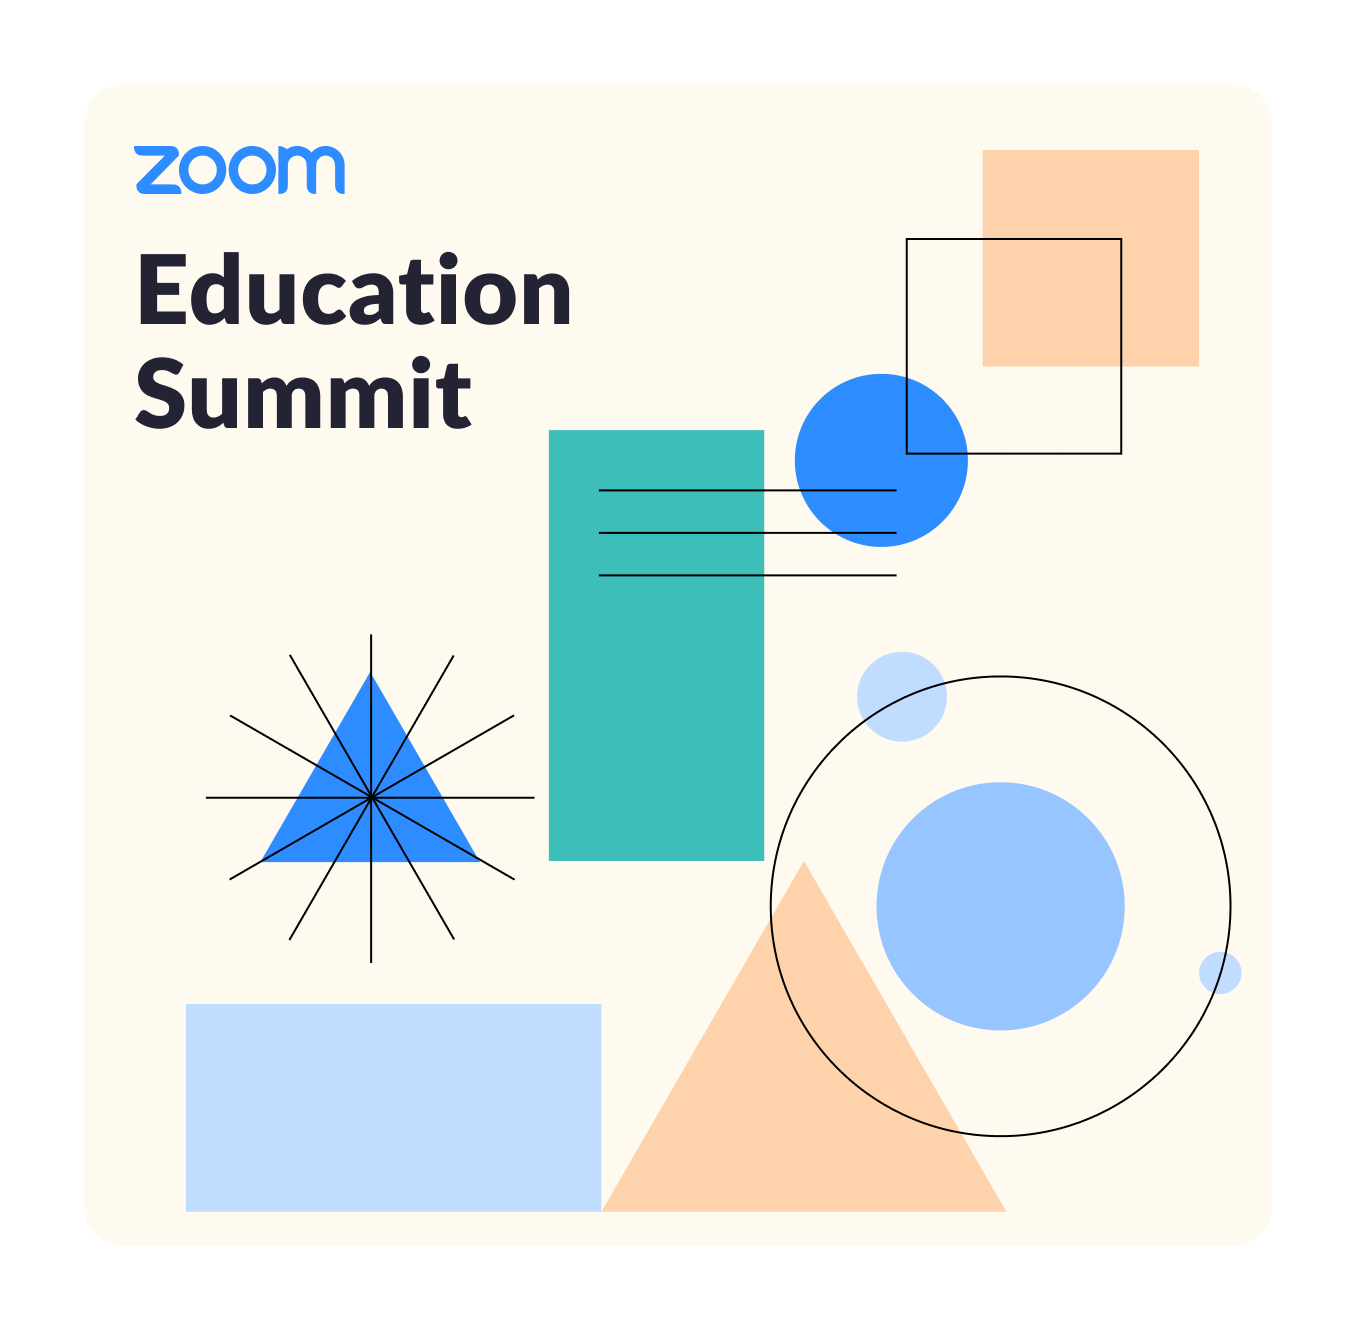 Zoom Education Summit